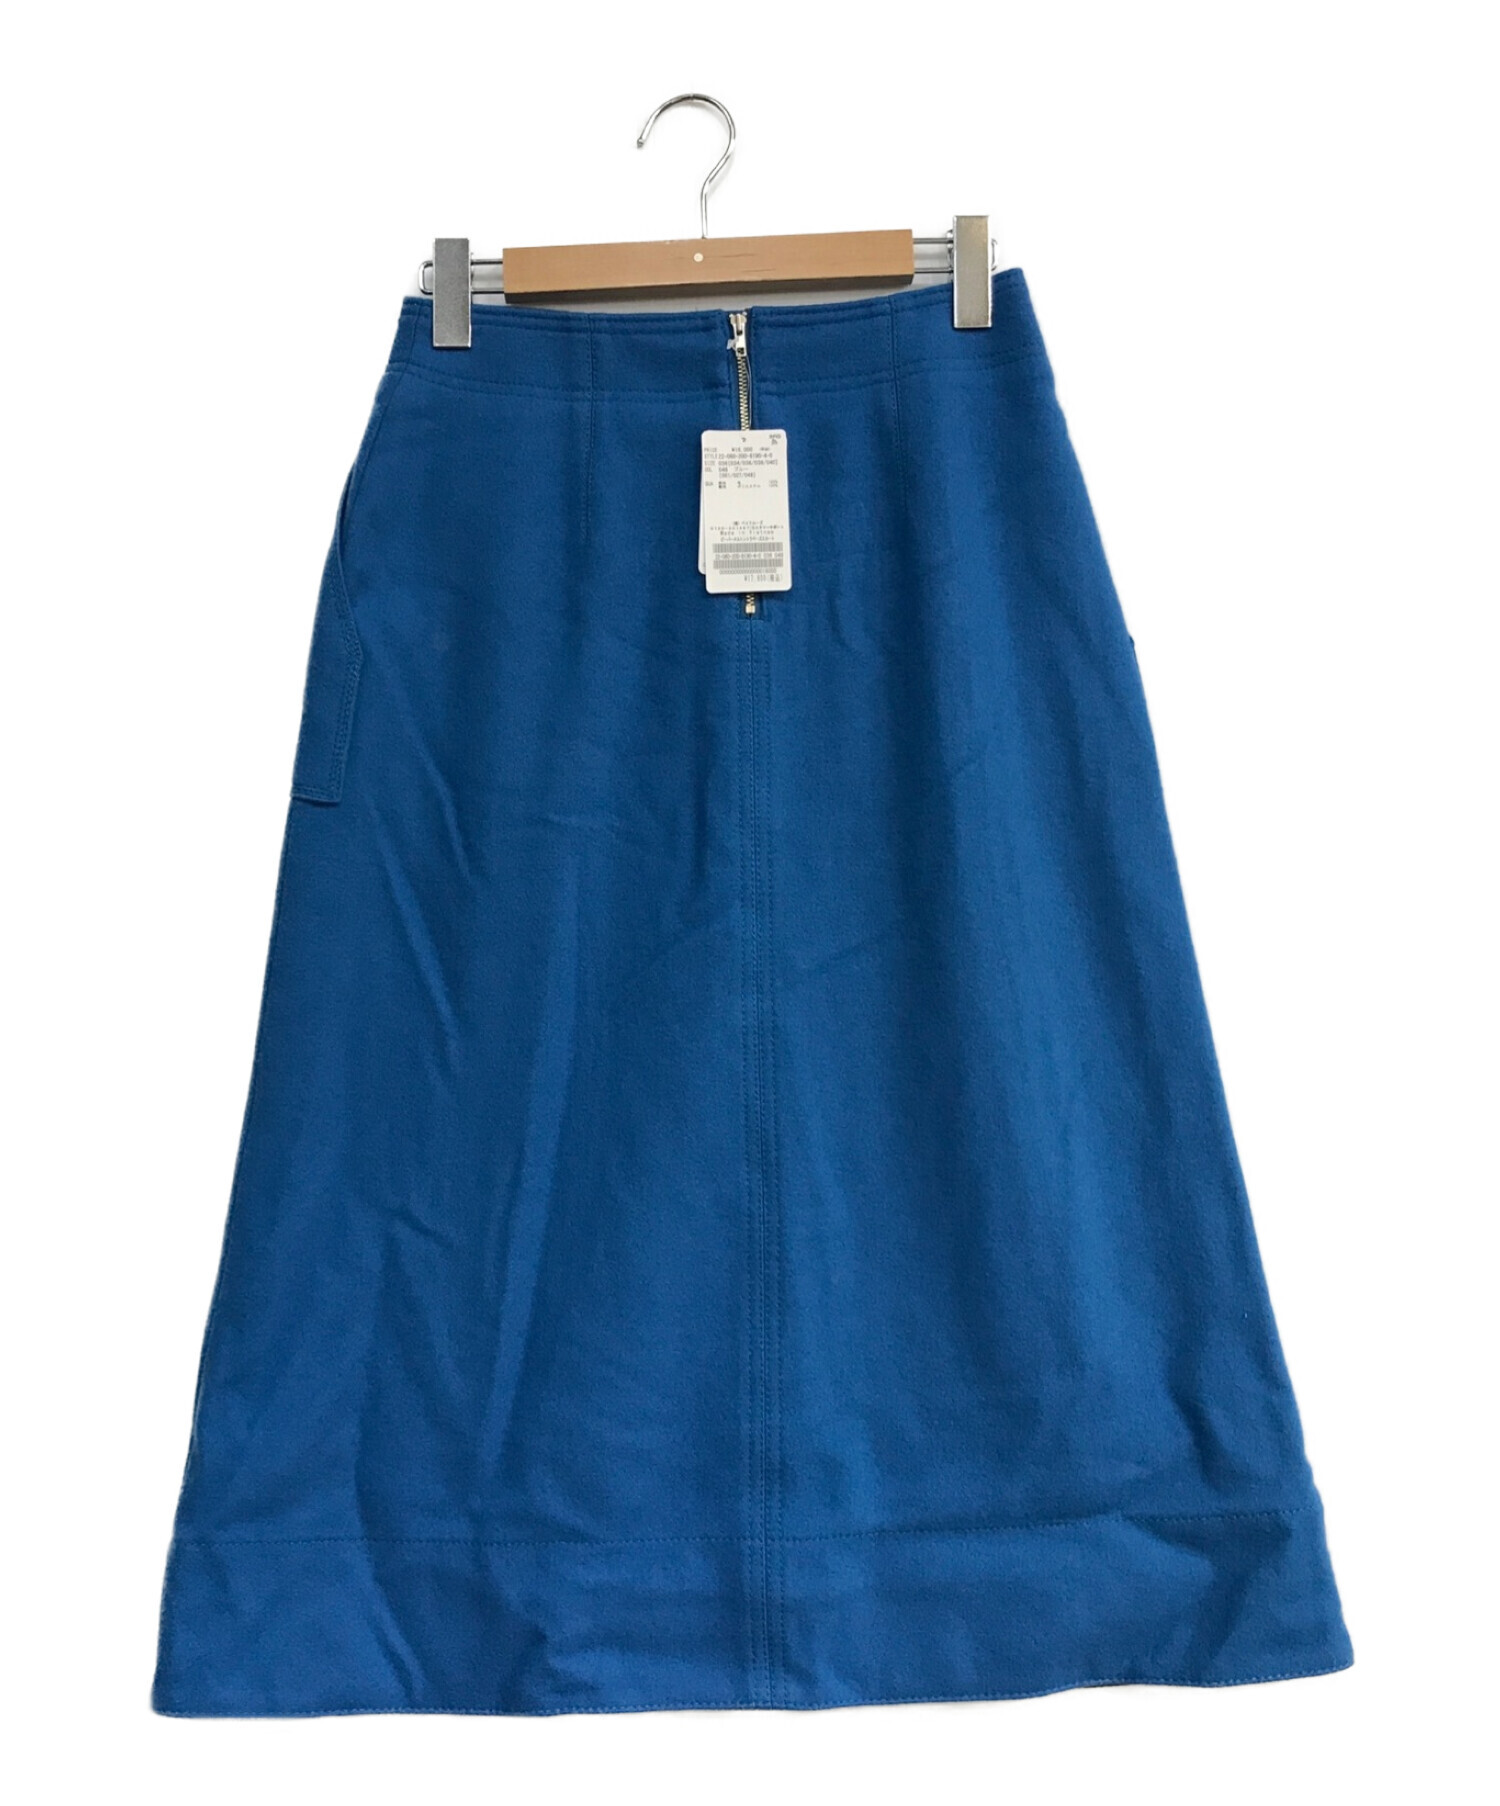 Spick and Span (スピックアンドスパン) ビーバーメルトントラペーズスカート ブルー サイズ:36 未使用品